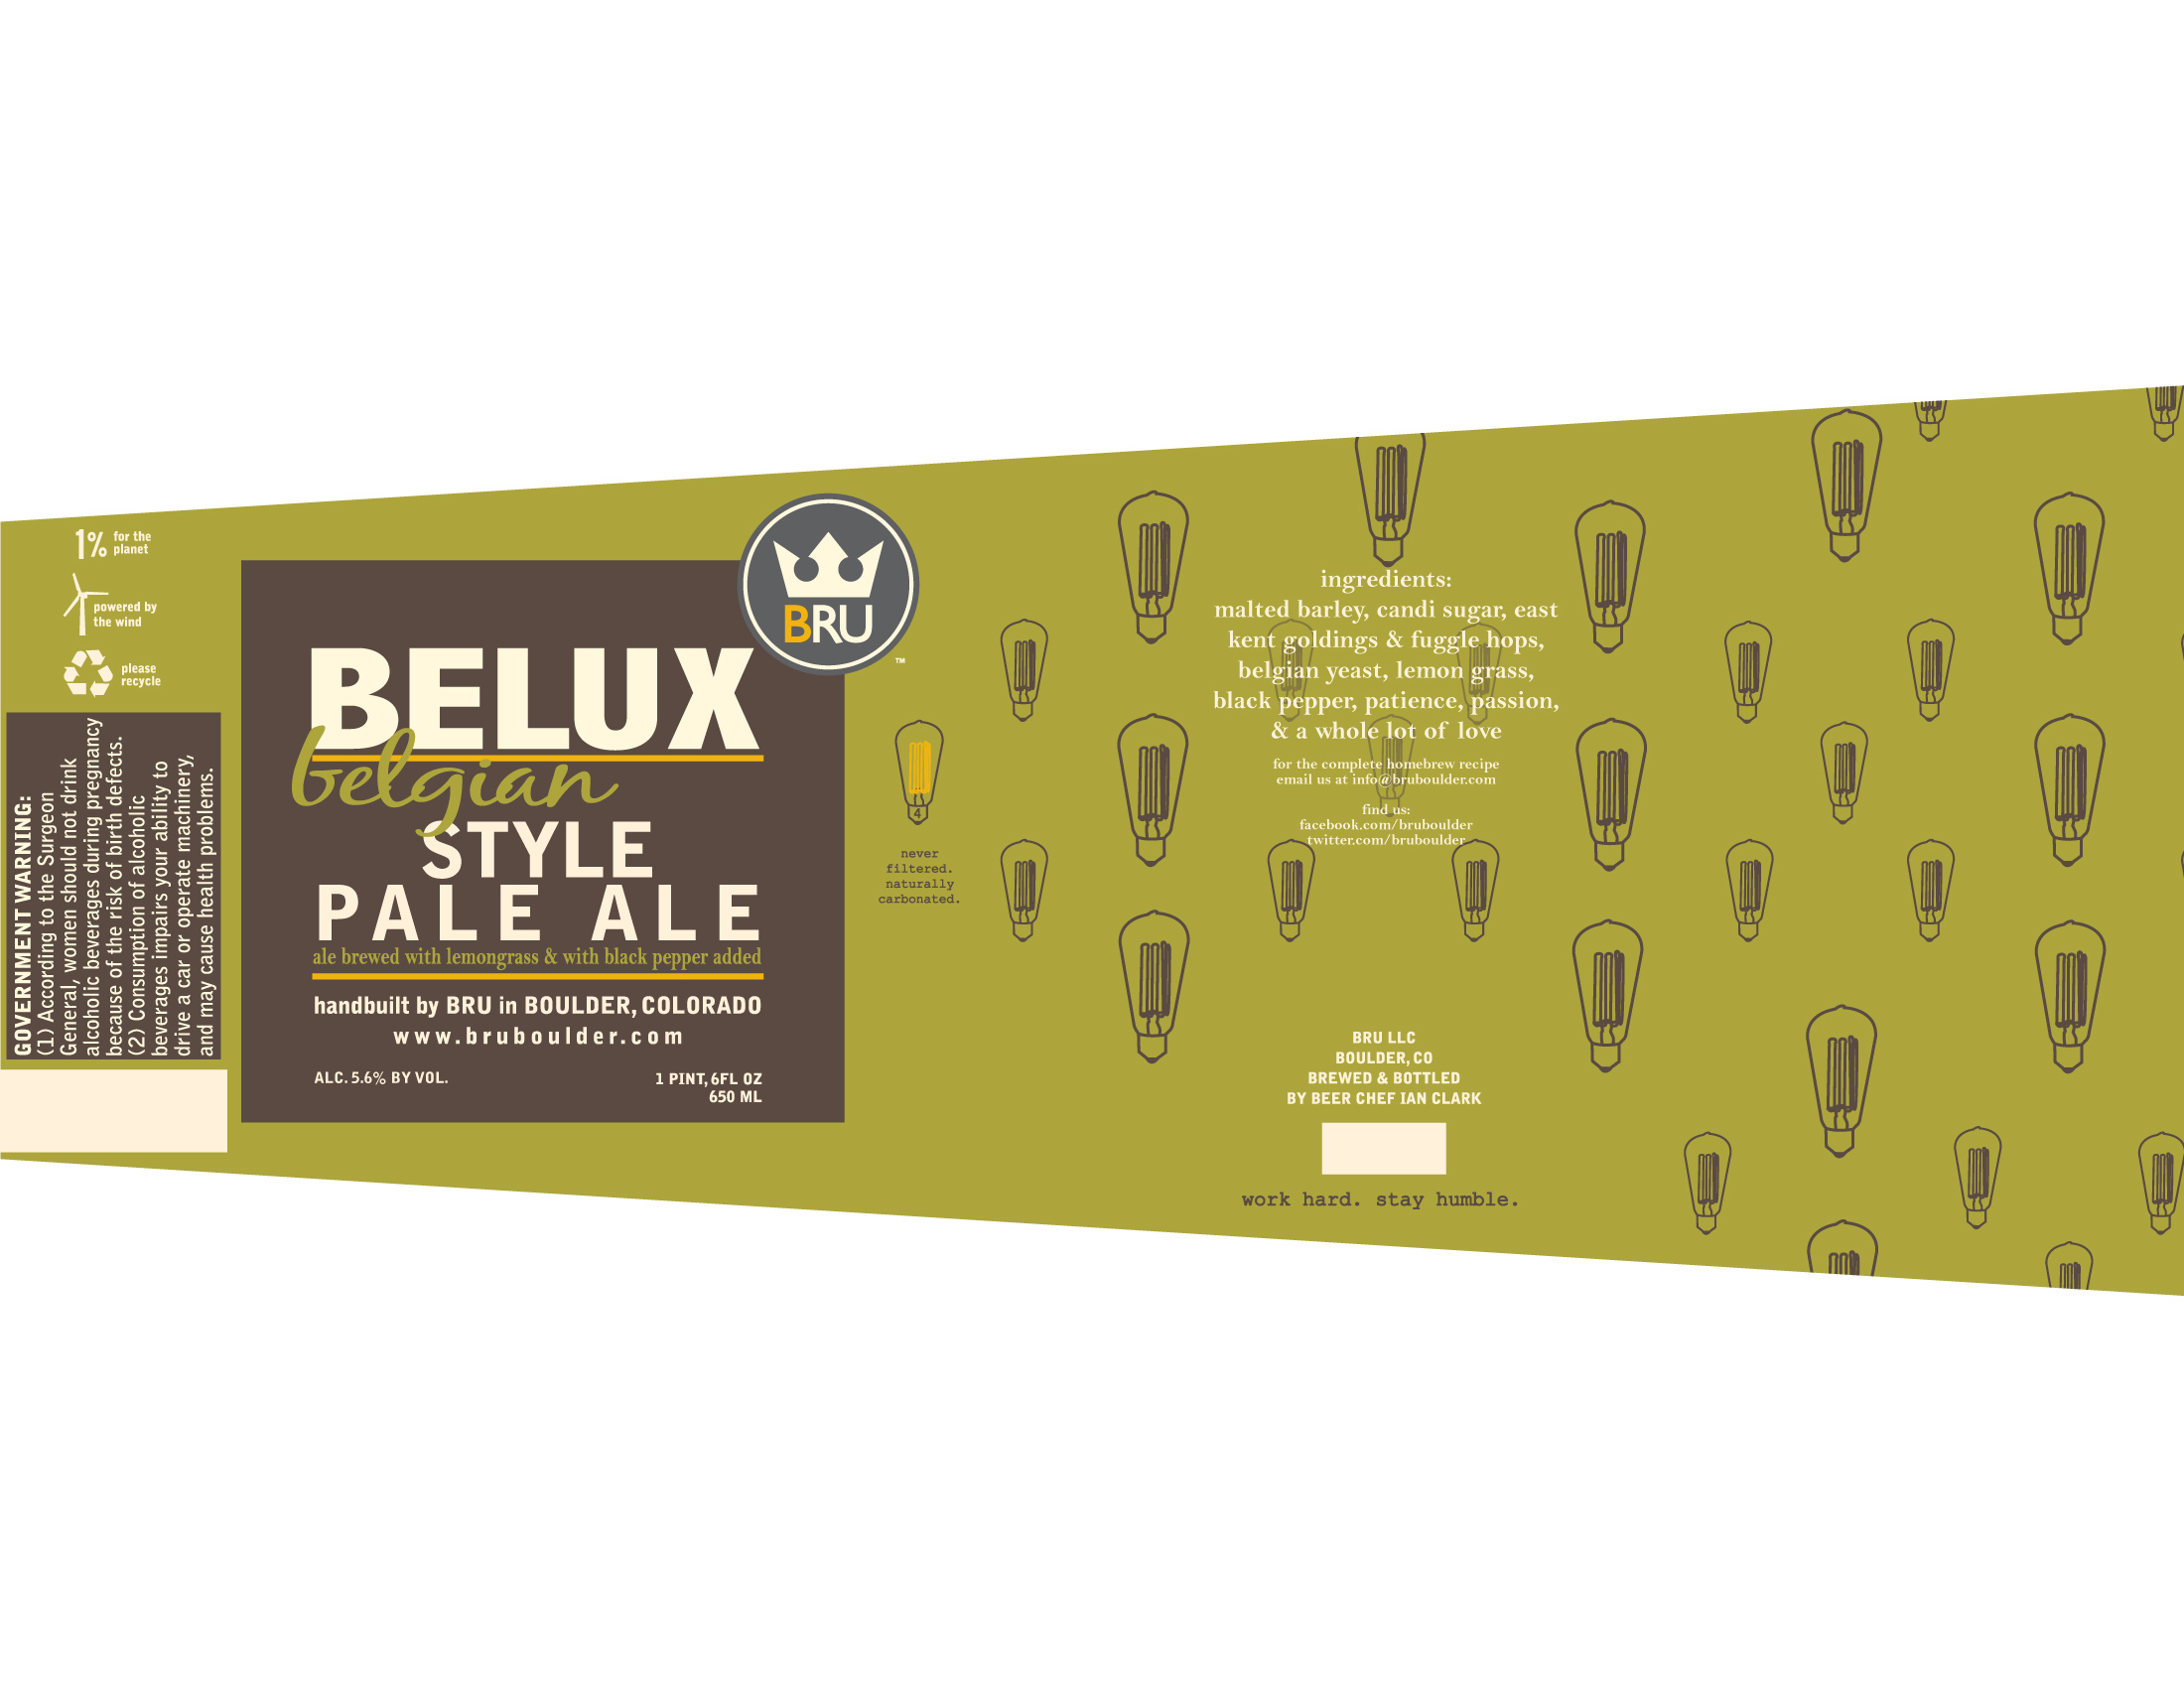 BRU Belux Belgian Style Pale Ale